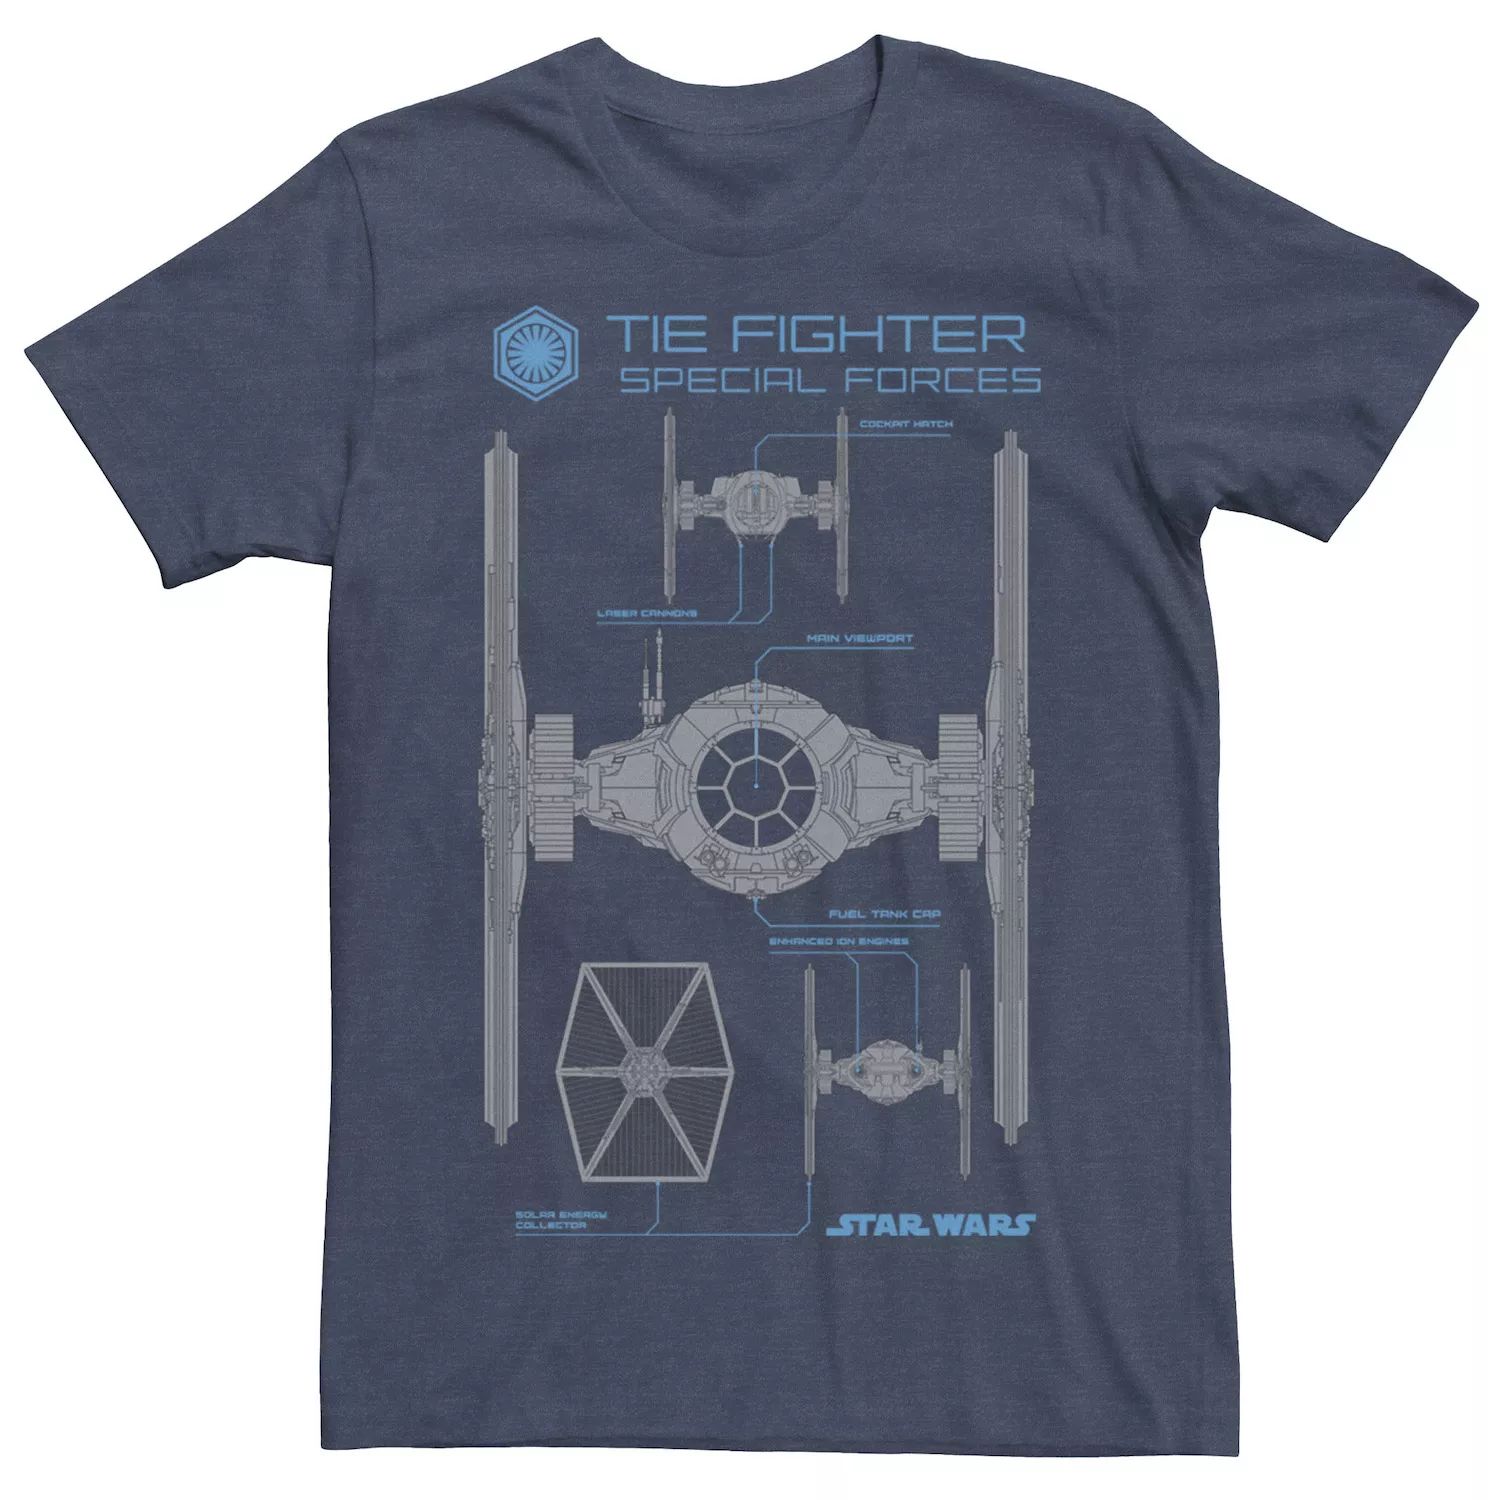 Мужская футболка The Force Awakens TIE Fighter Schematics Star Wars